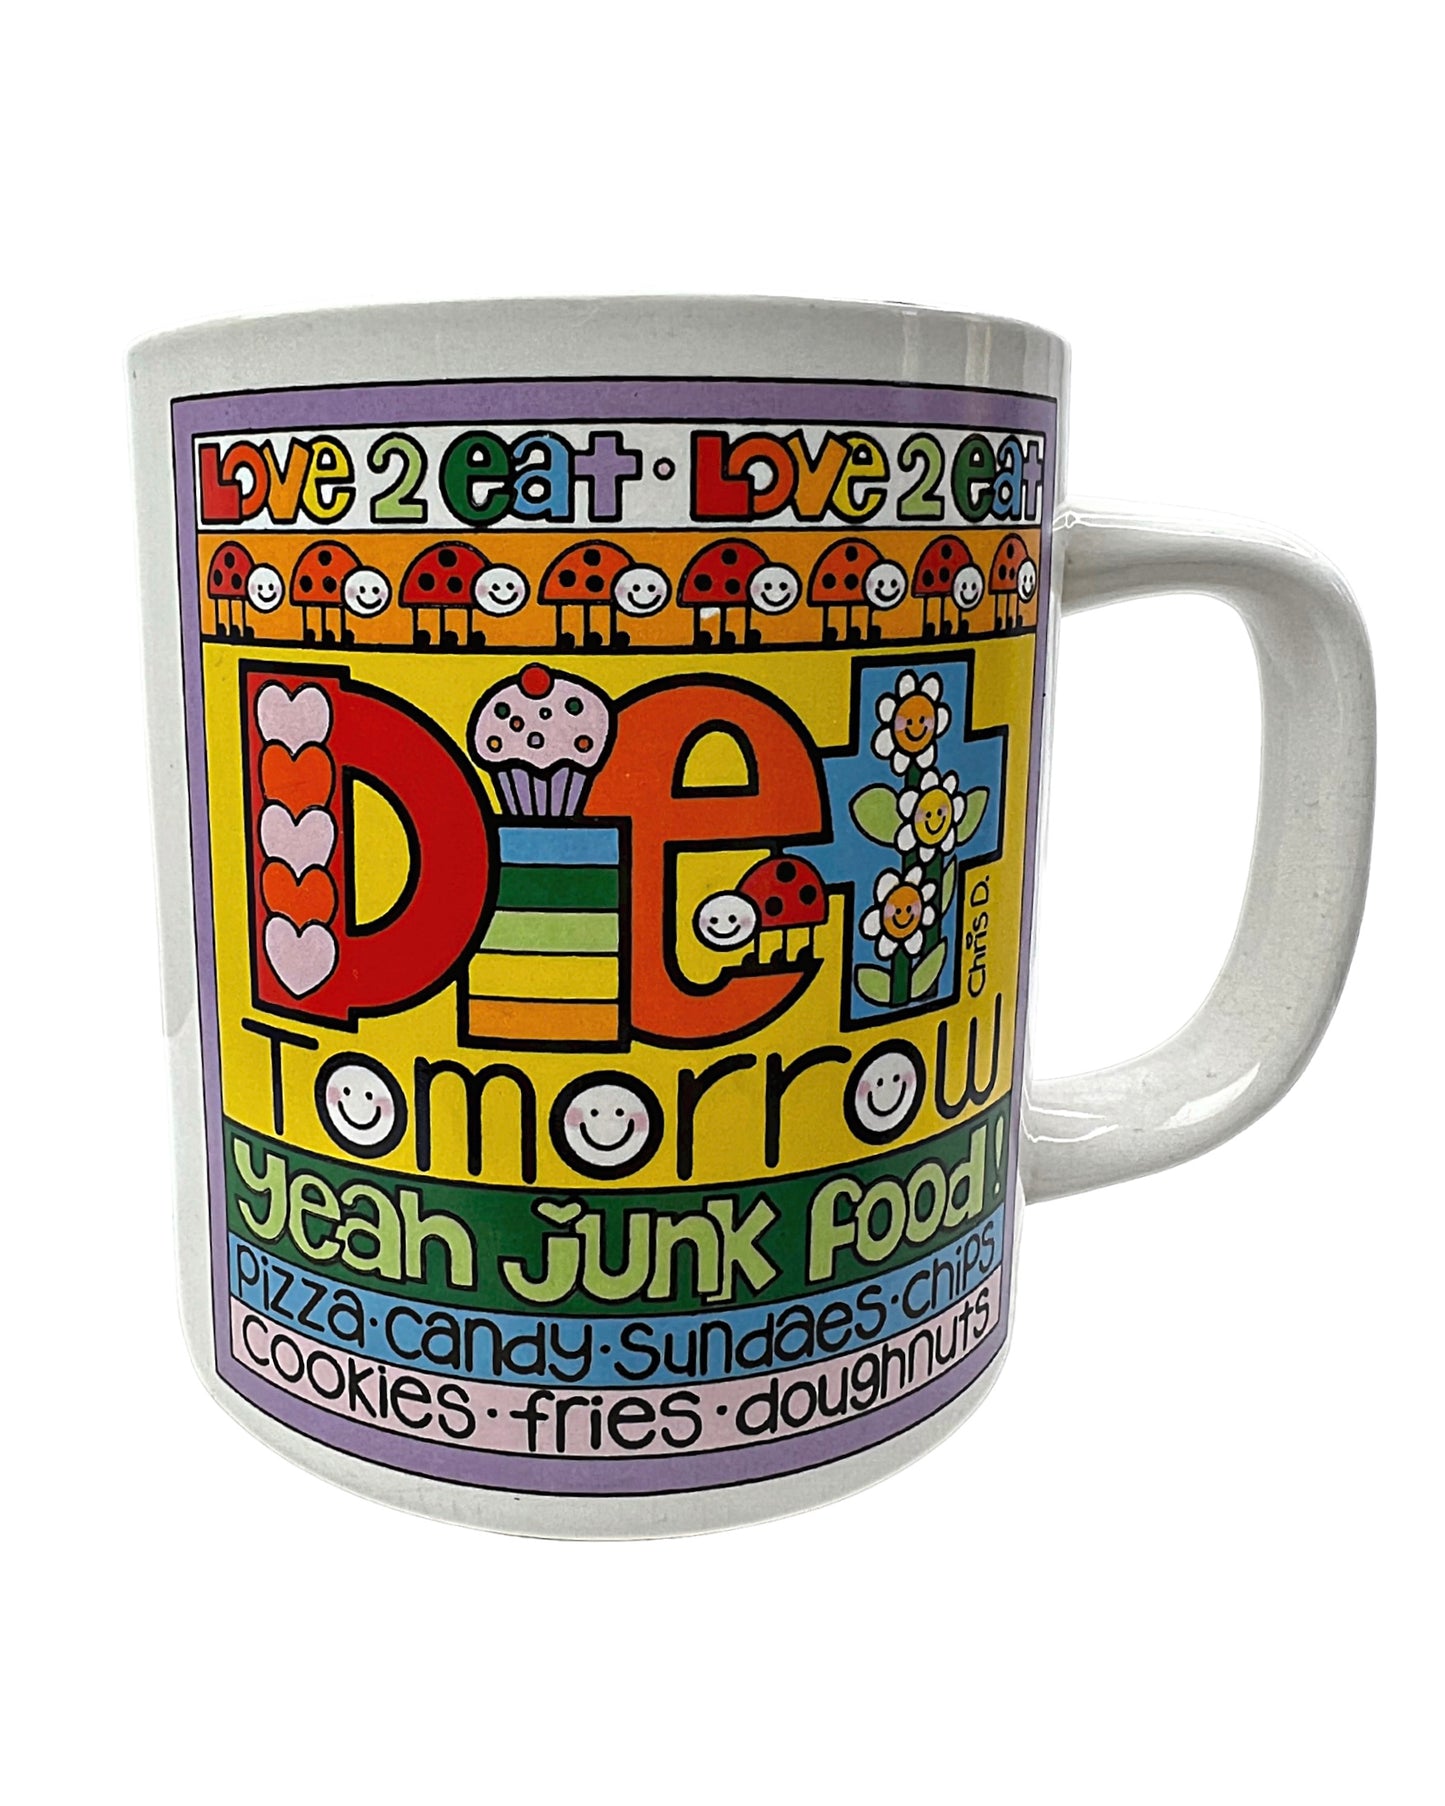 1984 Love 2 Eat! Diet Tomorrow Yeah Junk Food 12oz Coffee Mug